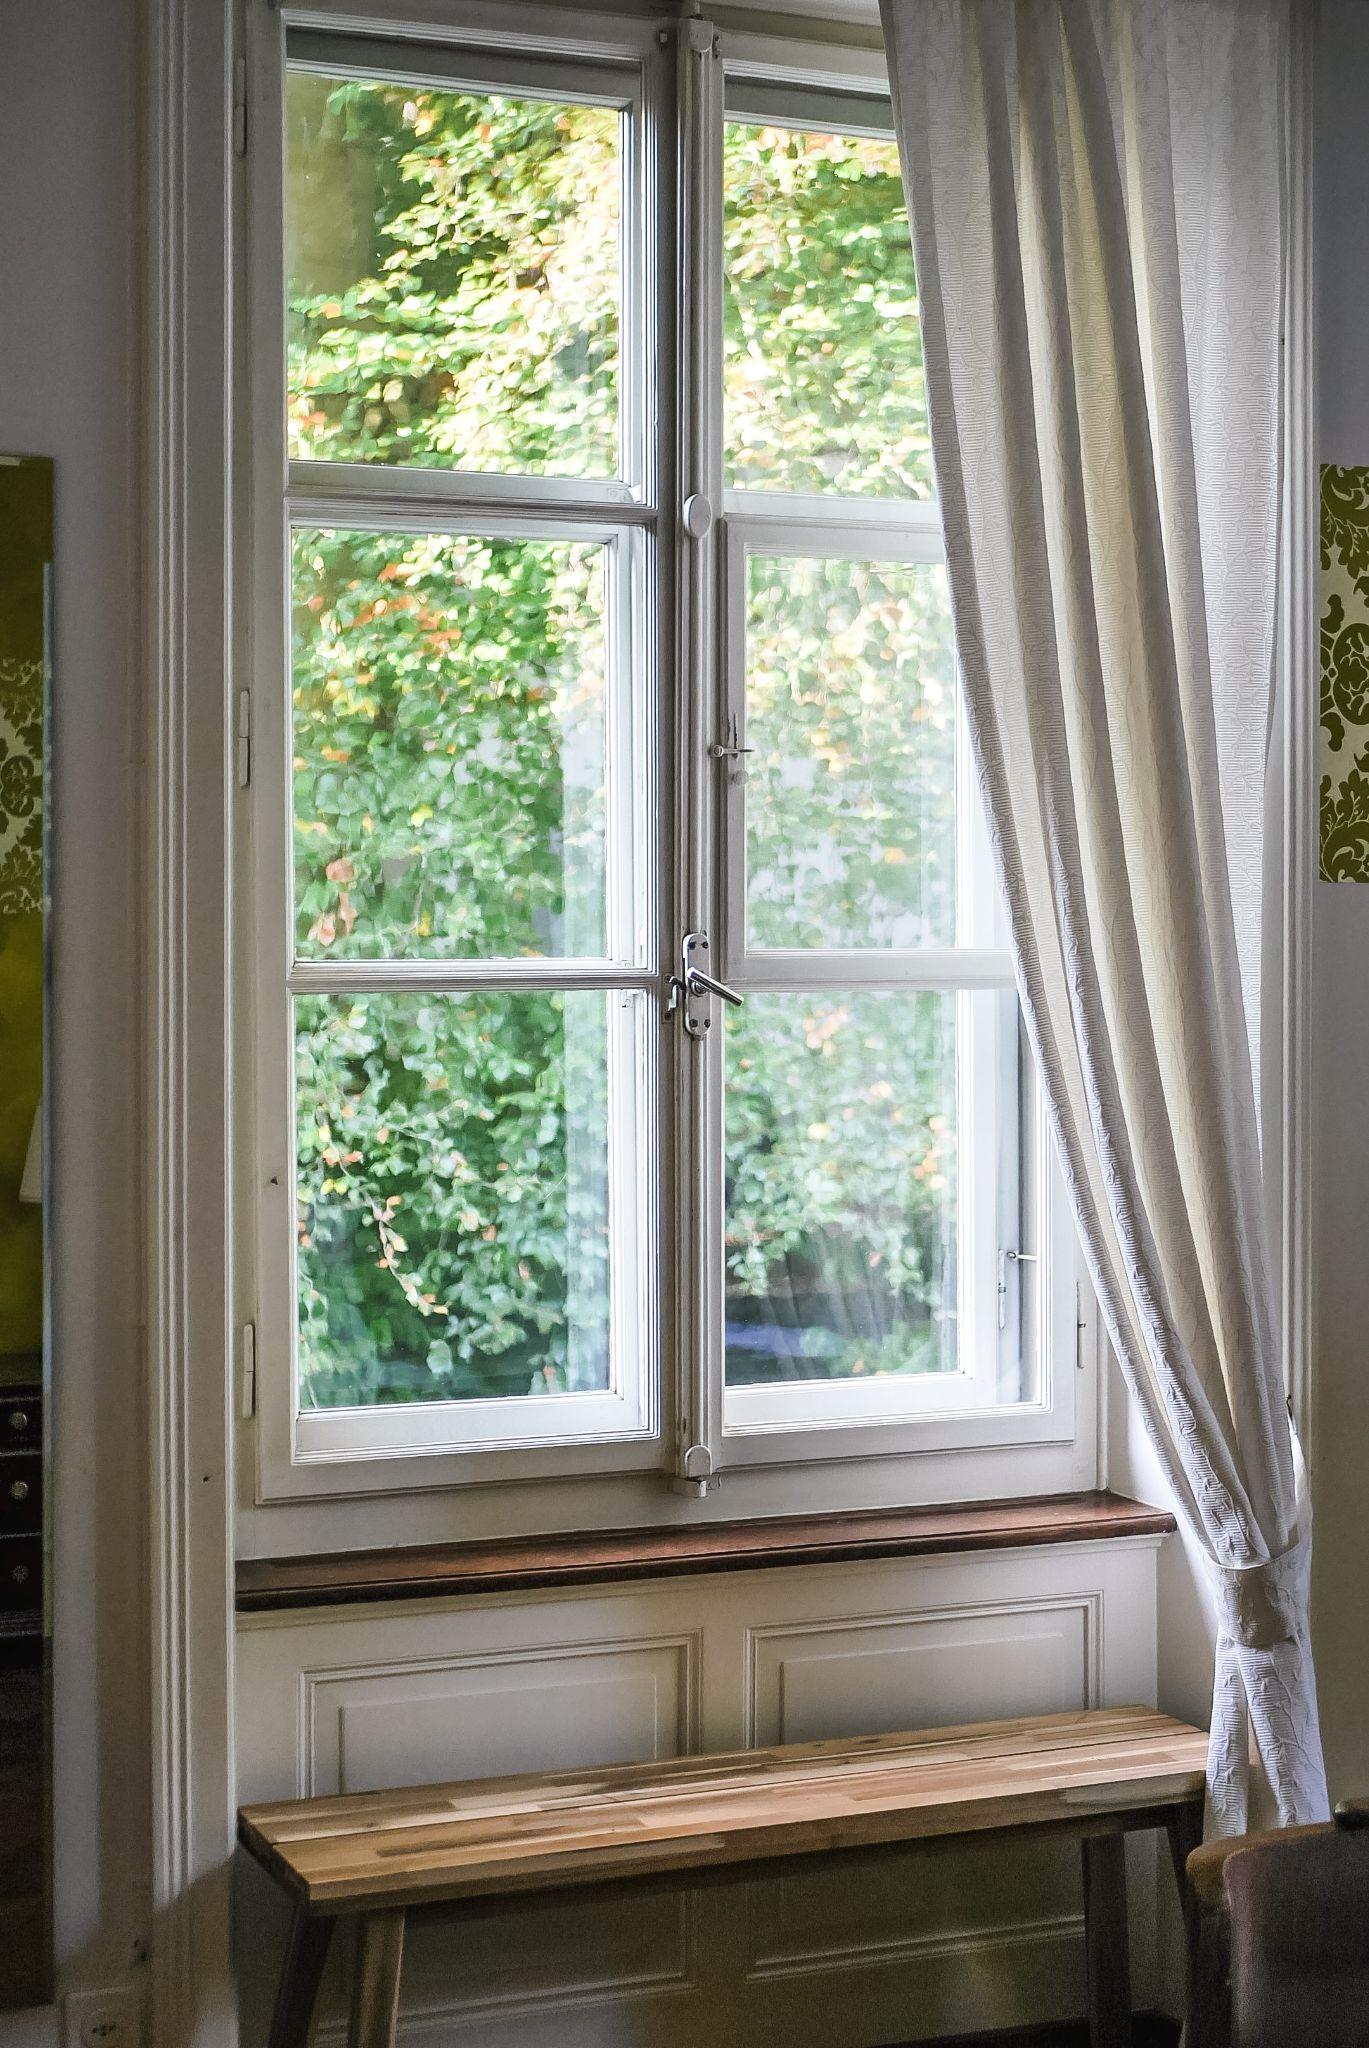 window showing outside